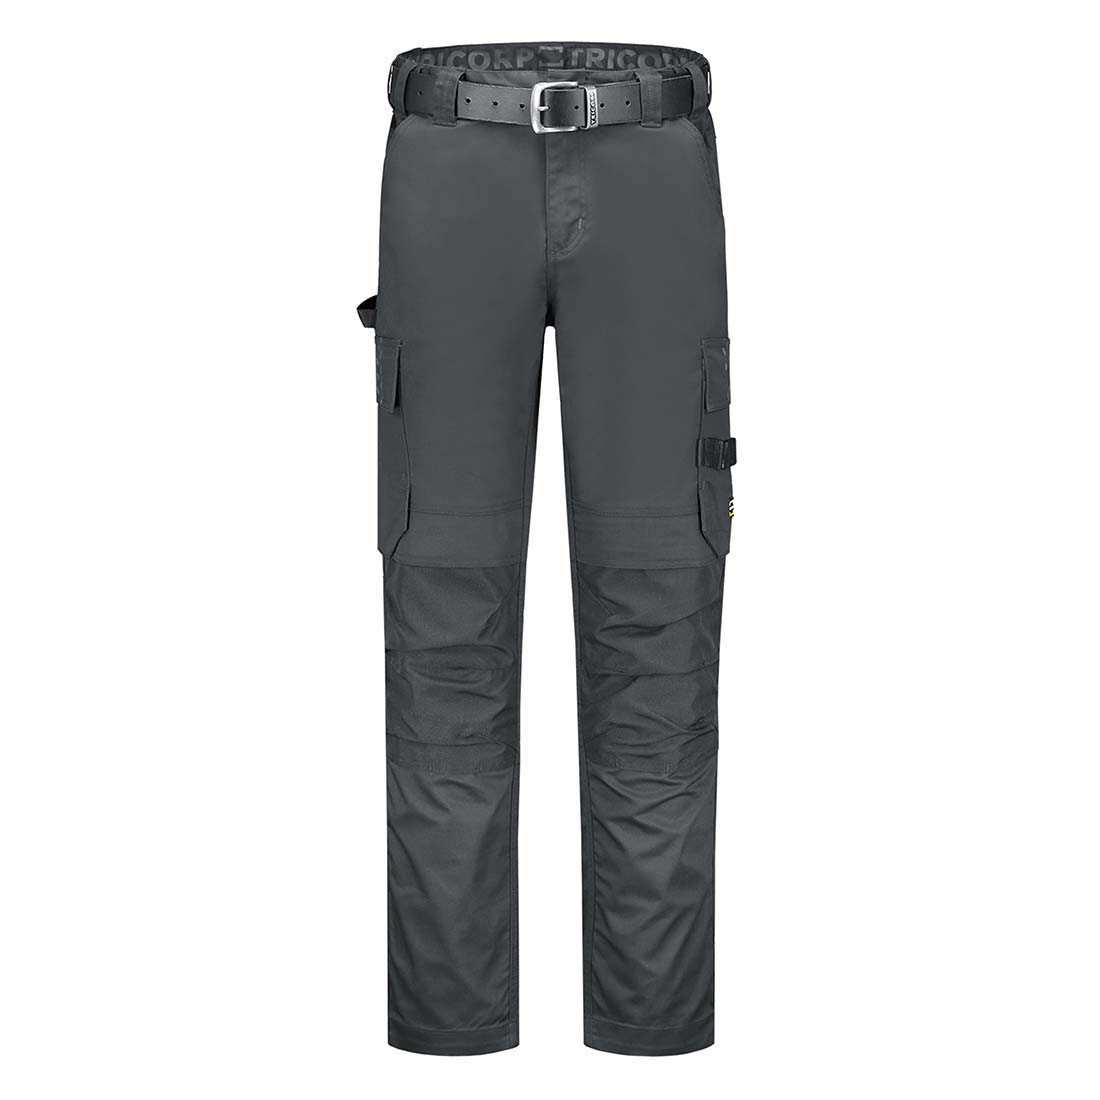 Pantalon de travail unisex - Les vêtements de protection